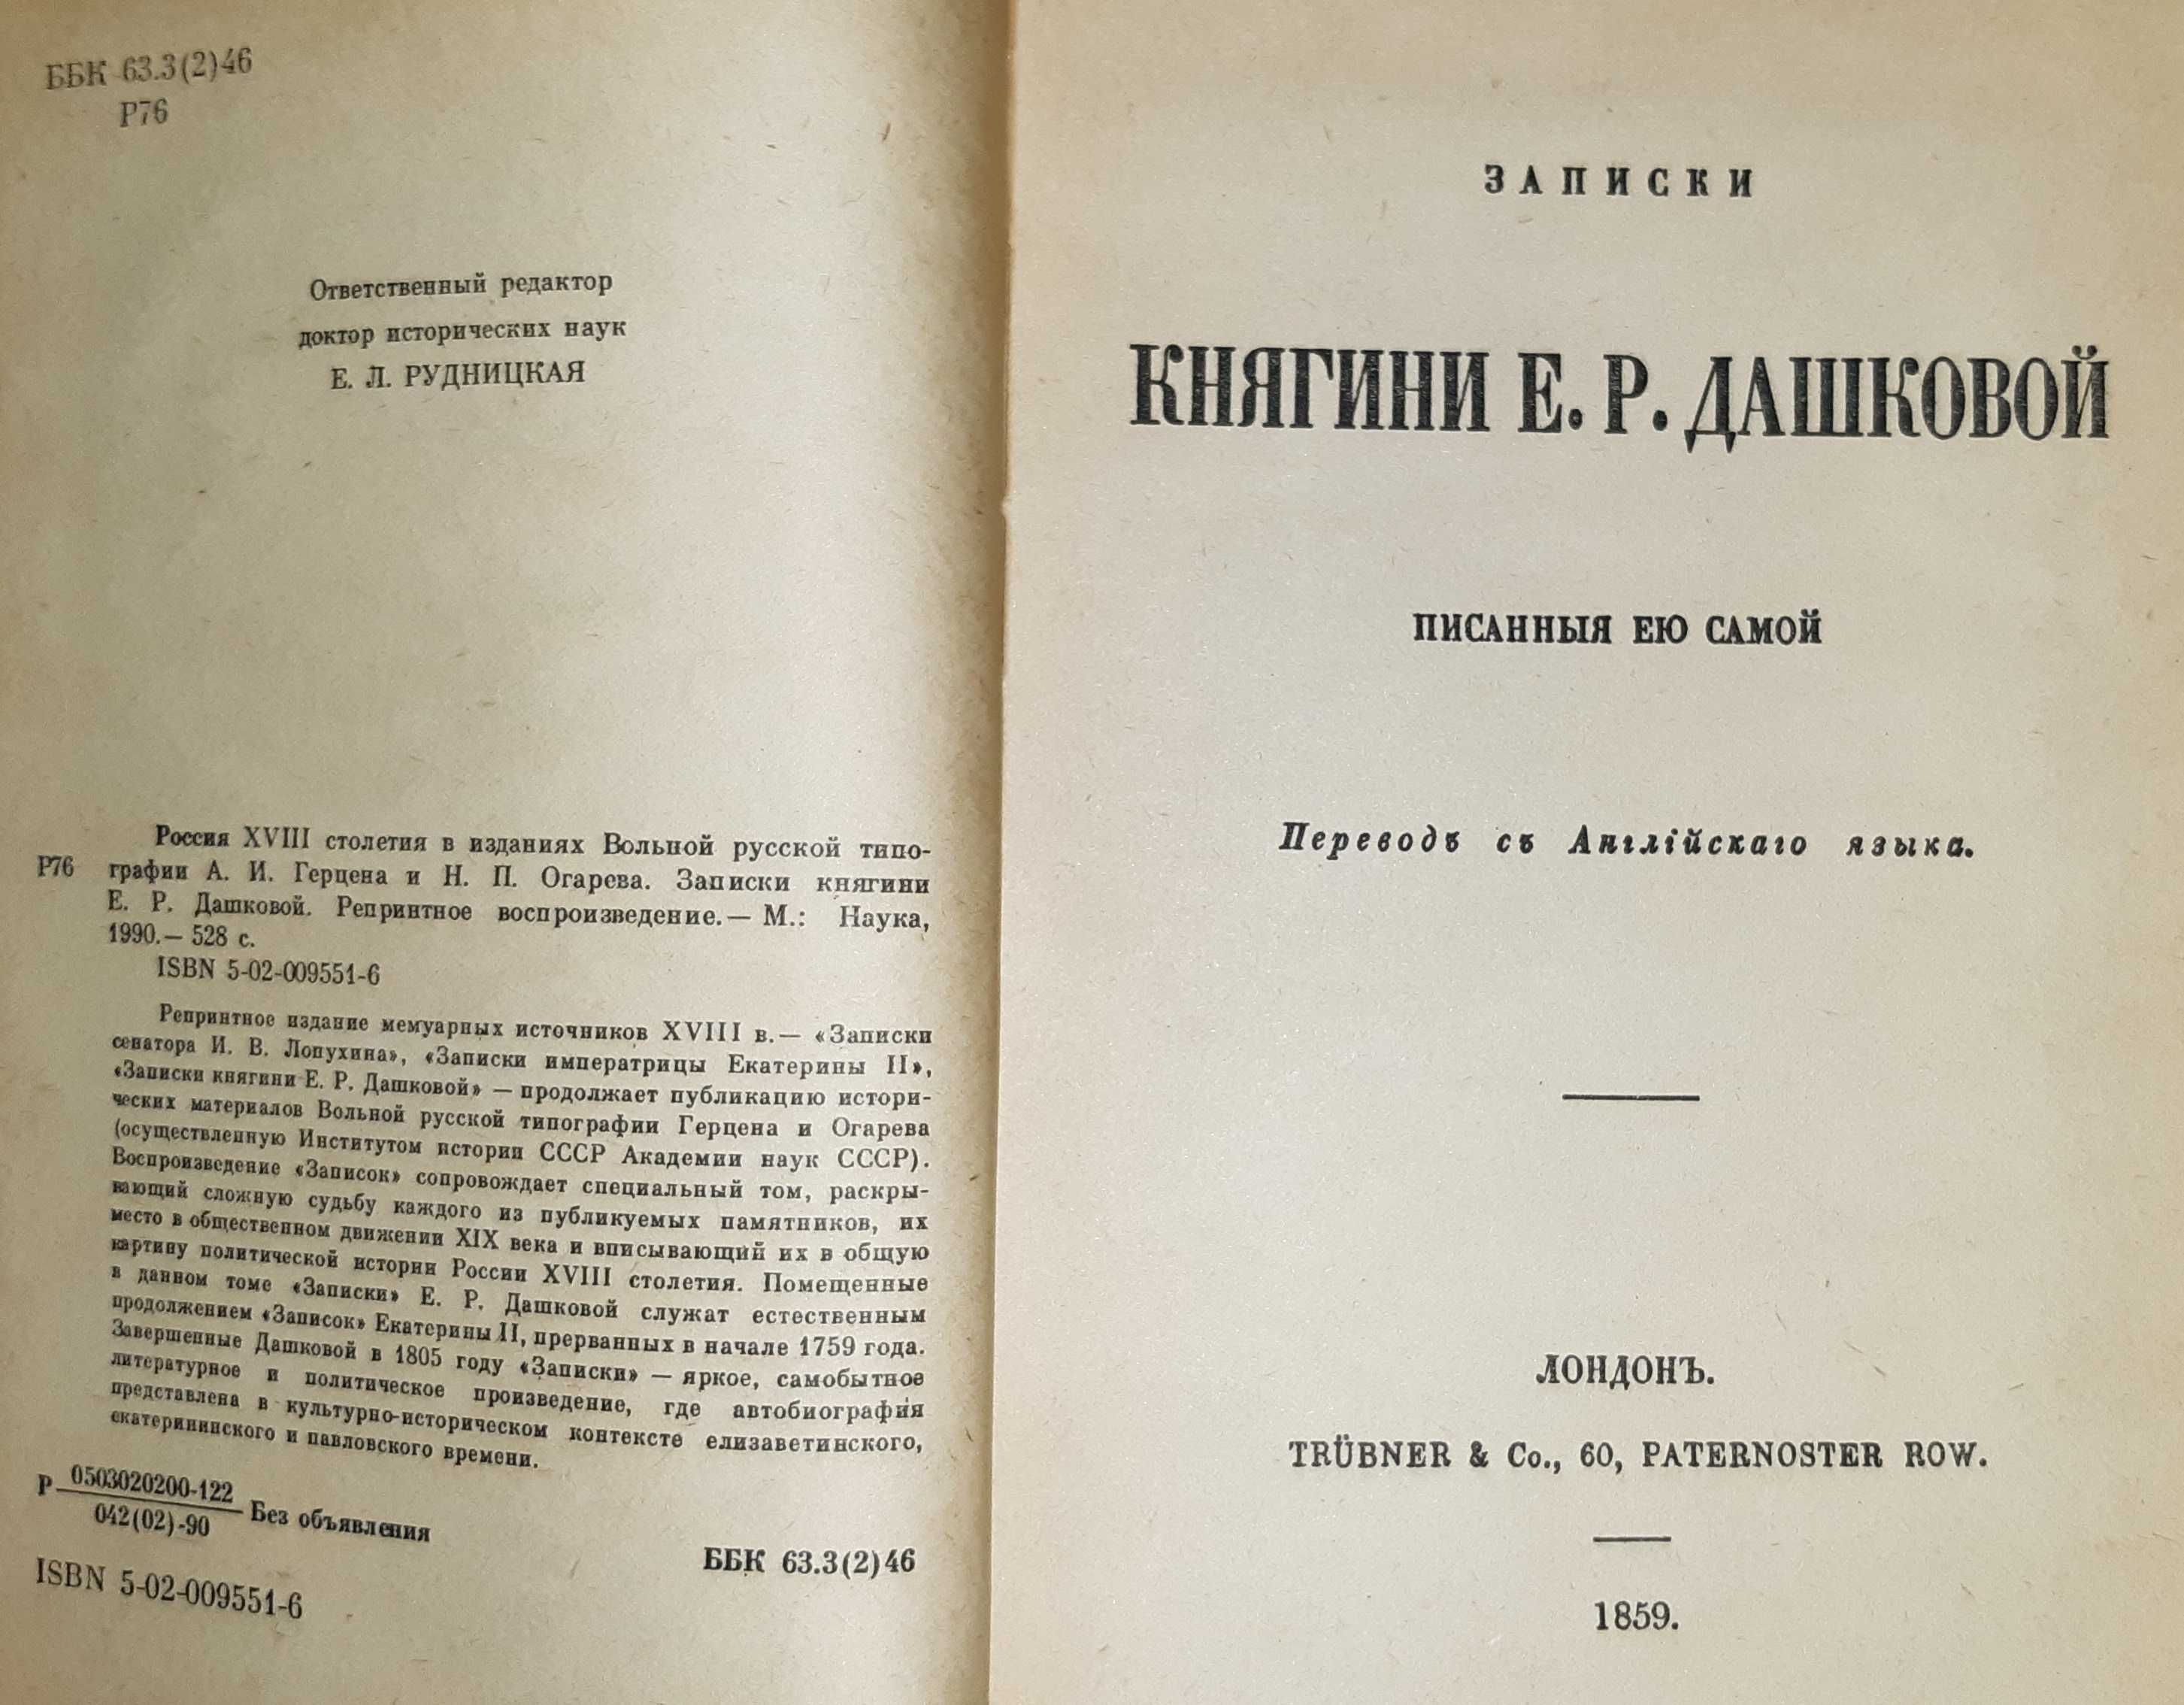 книги історія, біографії Карамзин,Гоголь,Толстой,etc